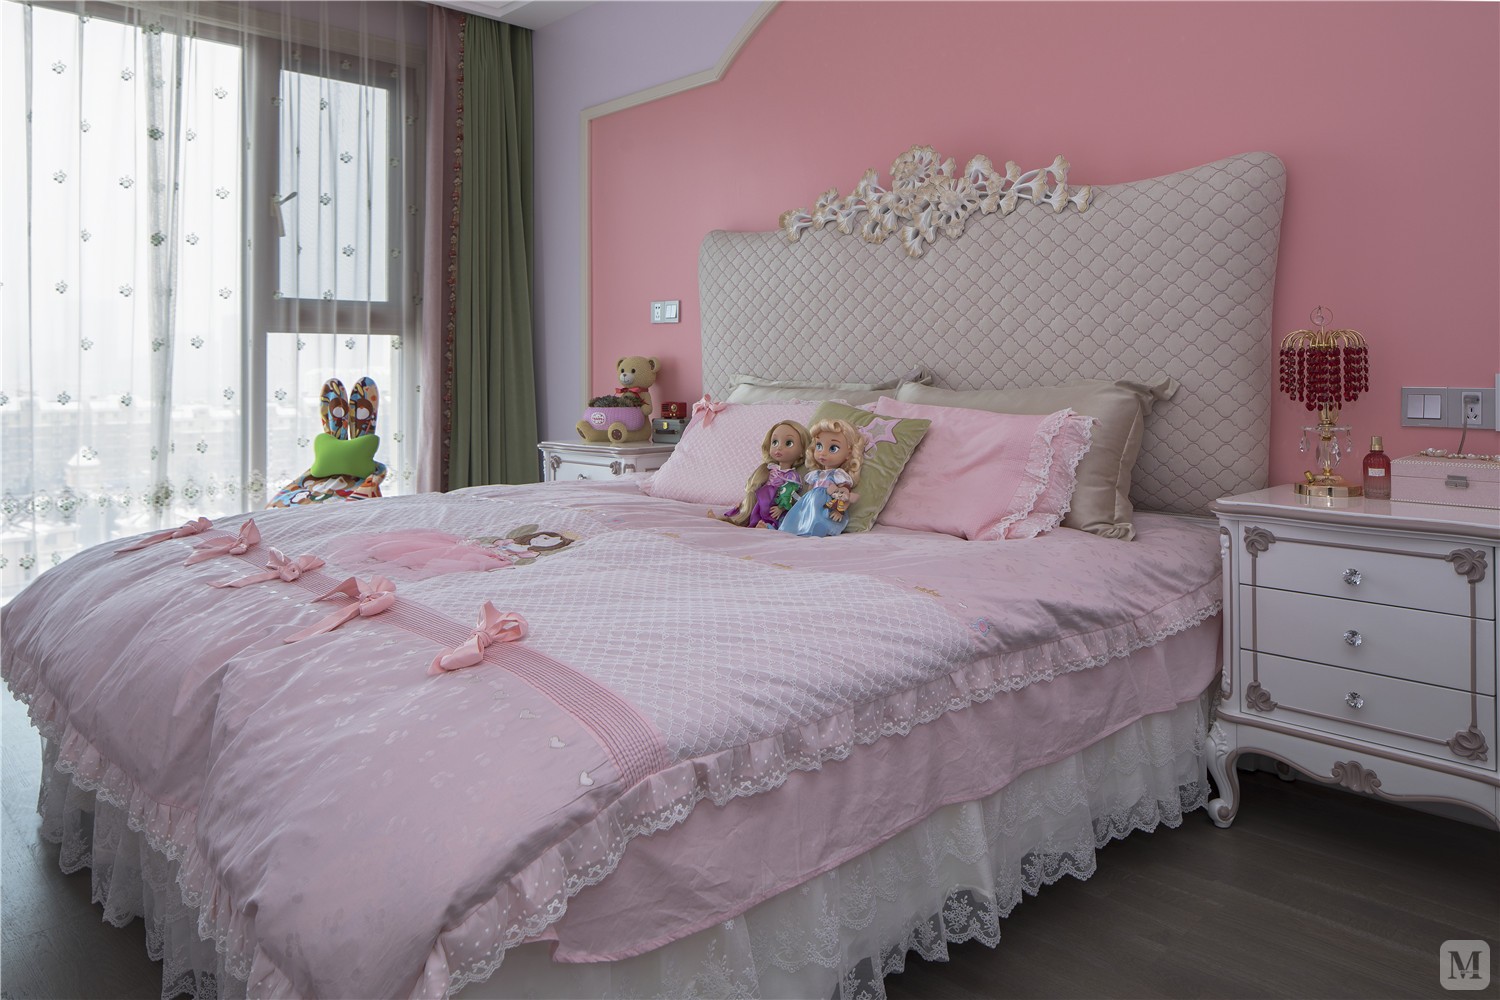 这应该是所有女孩都爱的满满粉色。连地板都是镶着施华洛世奇水晶蝴蝶的，提醒你这是可爱小公主的卧室！